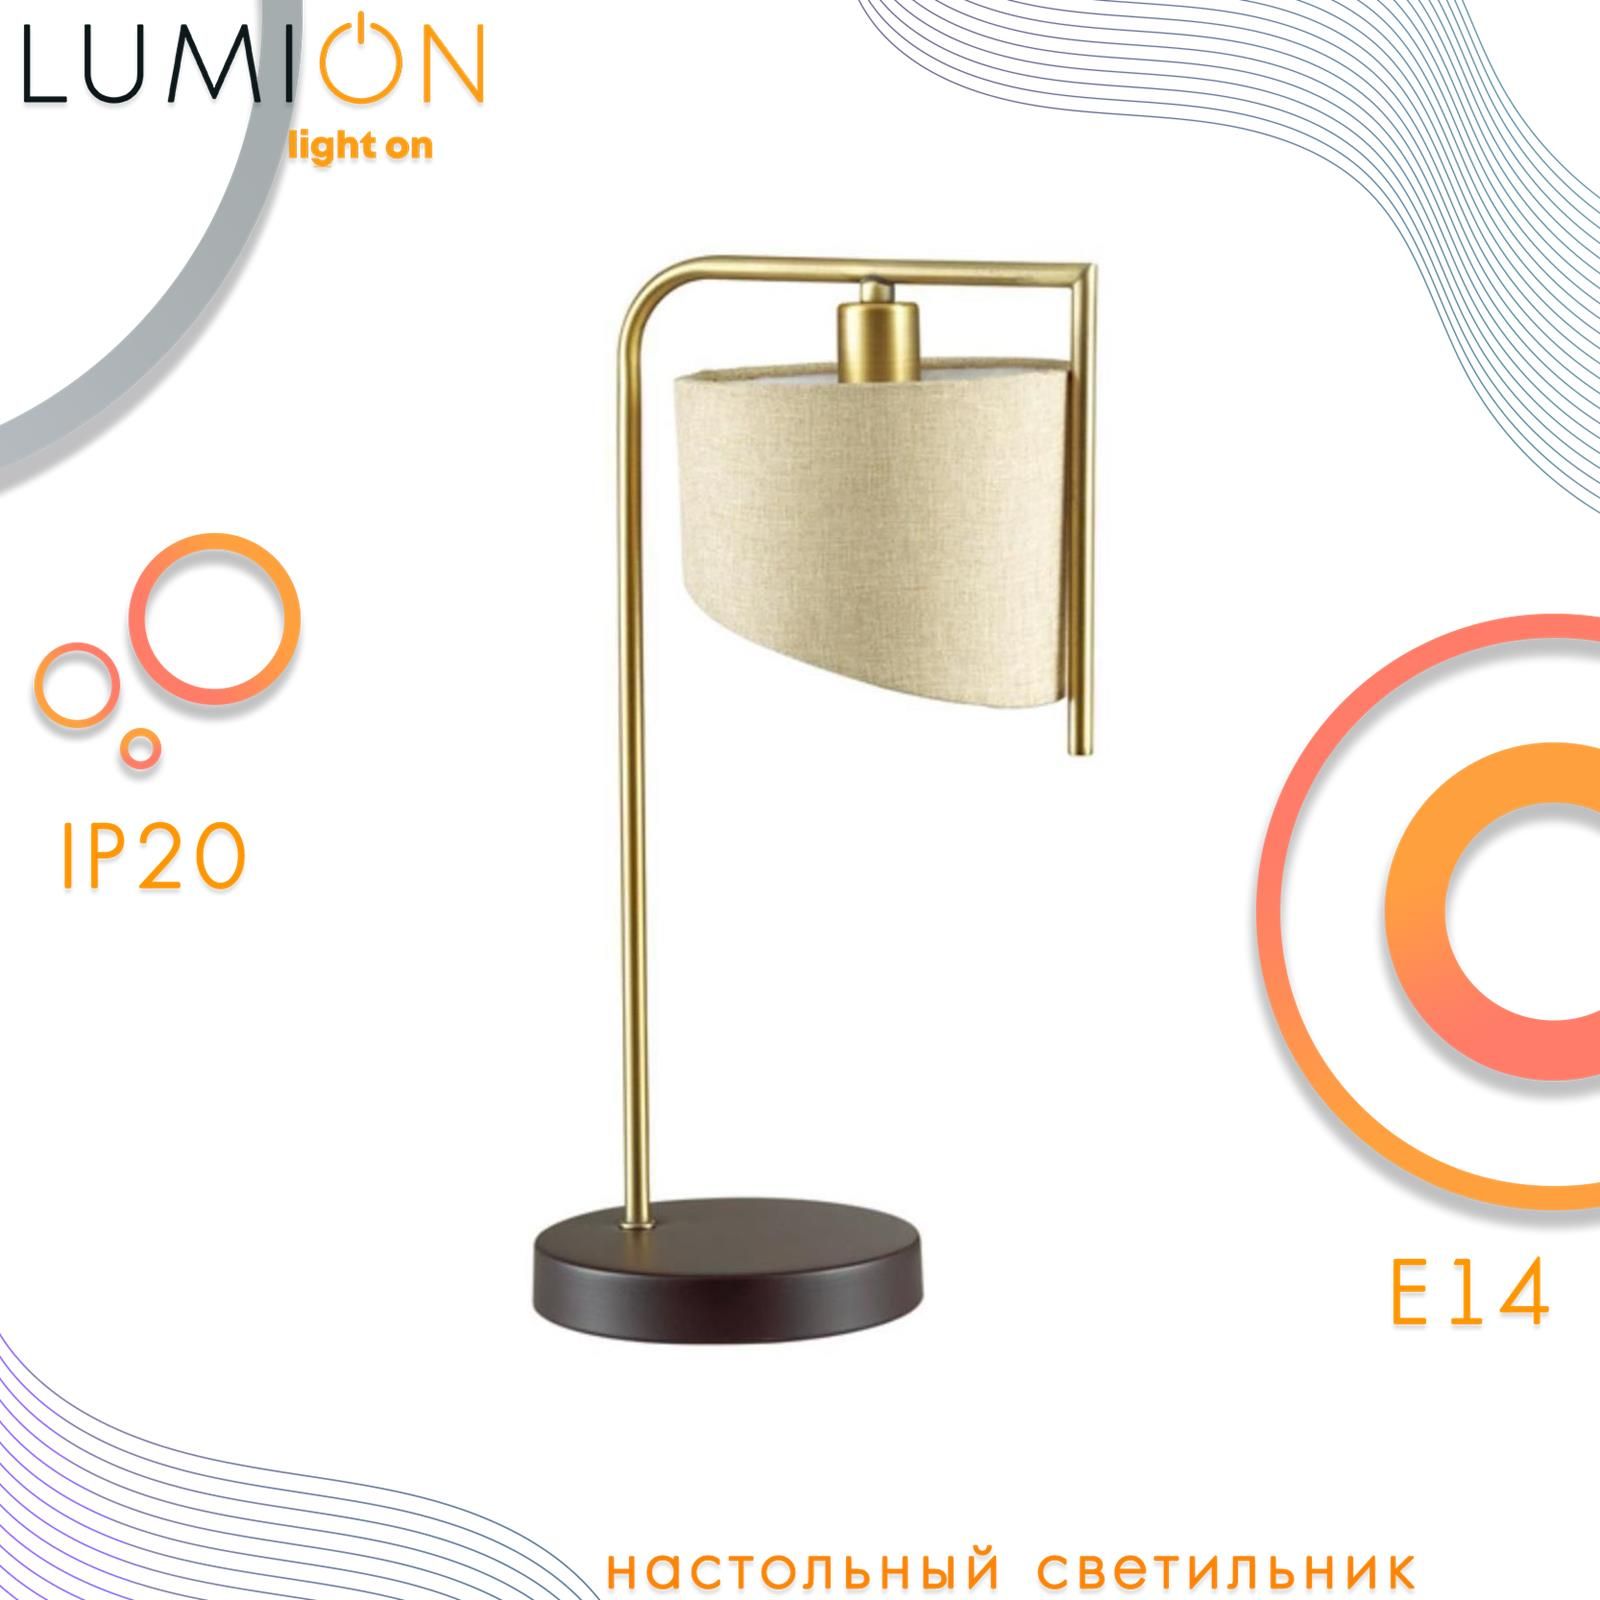 Настольная лампа lumion kimberly 4408 1t в интерьере